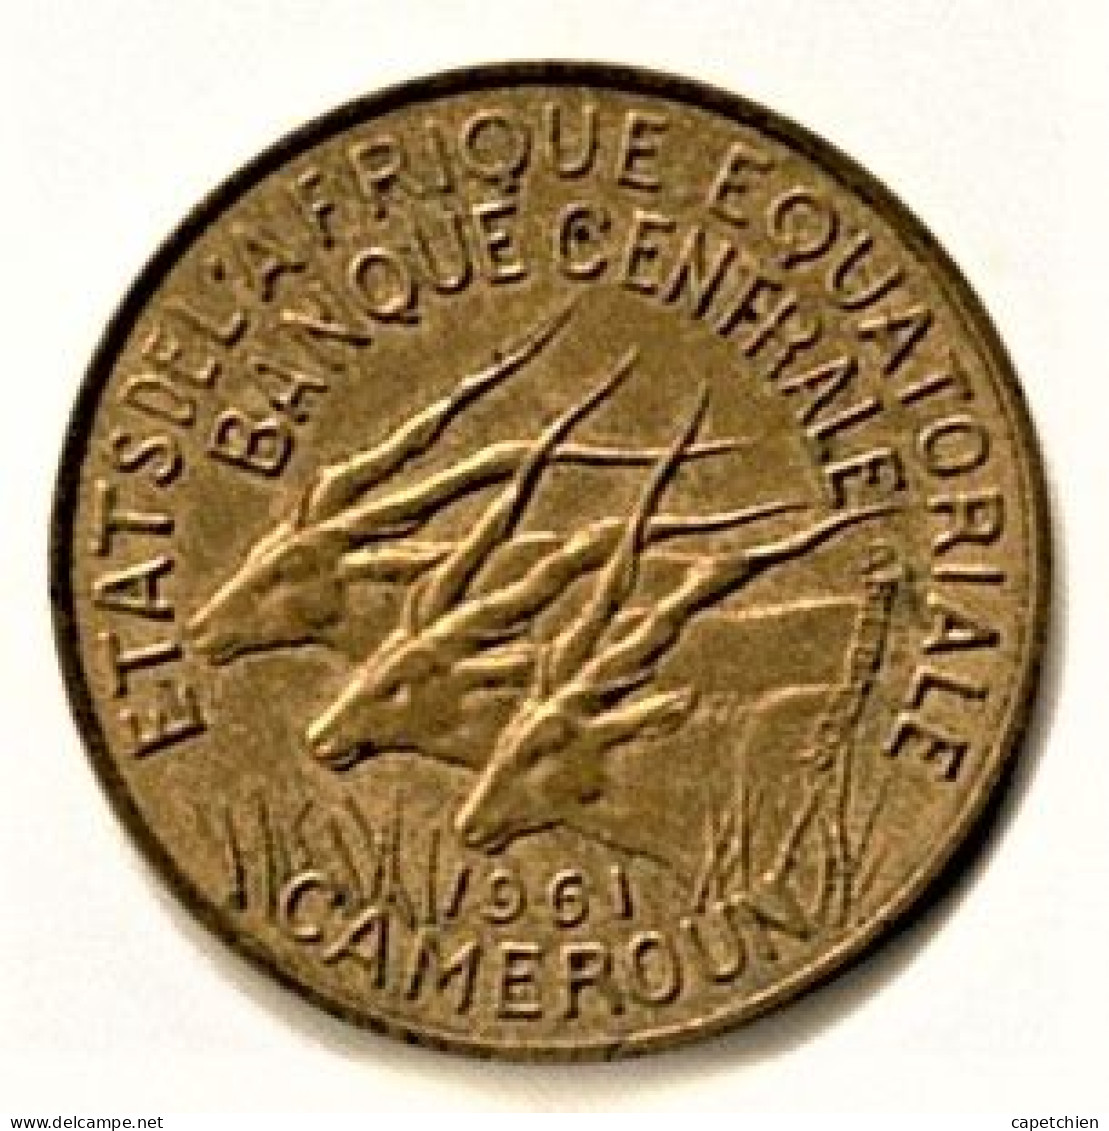 ETAT DE L'AFRIQUE EQUATORIALE / CAMEROUN / 10 FRANCS / 1961 - Costa Francesa De Los Somalíes